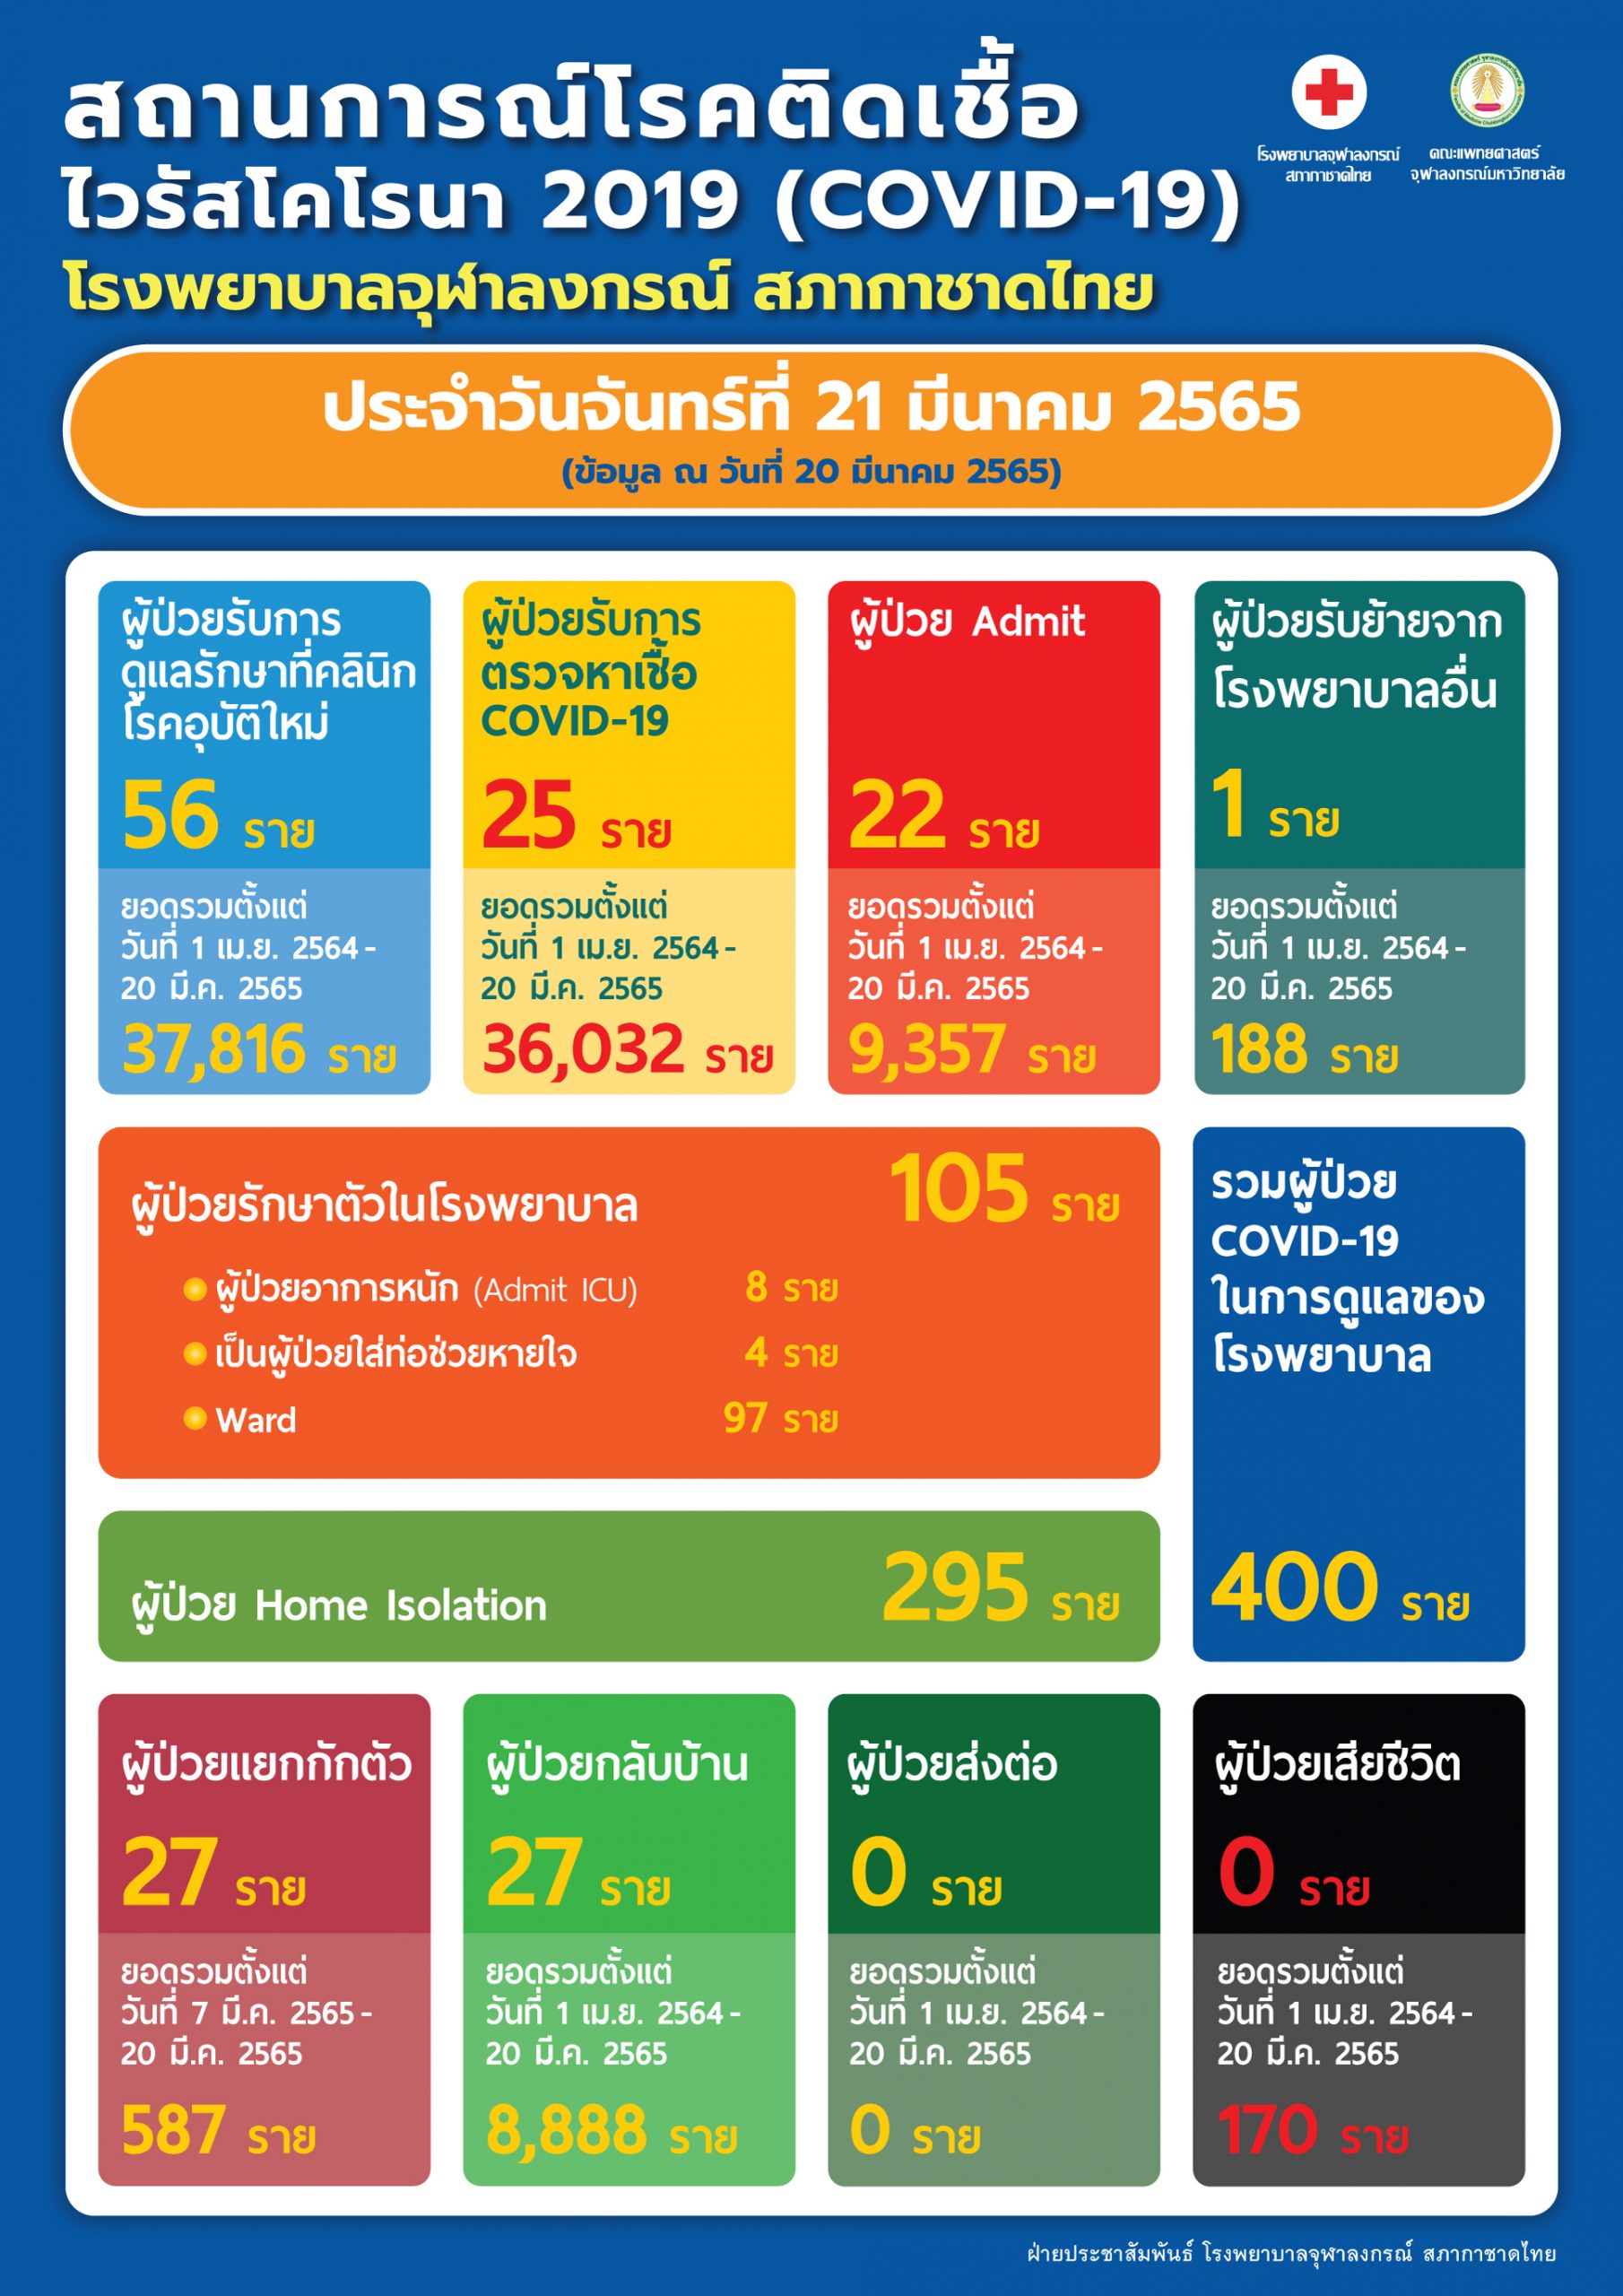 สถานการณ์โรคติดเชื้อไวรัสโคโรนา 2019 (COVID-19) โรงพยาบาลจุฬาลงกรณ์ สภากาชาดไทย ประจำวันจันทร์ที่ 21 มีนาคม 2565